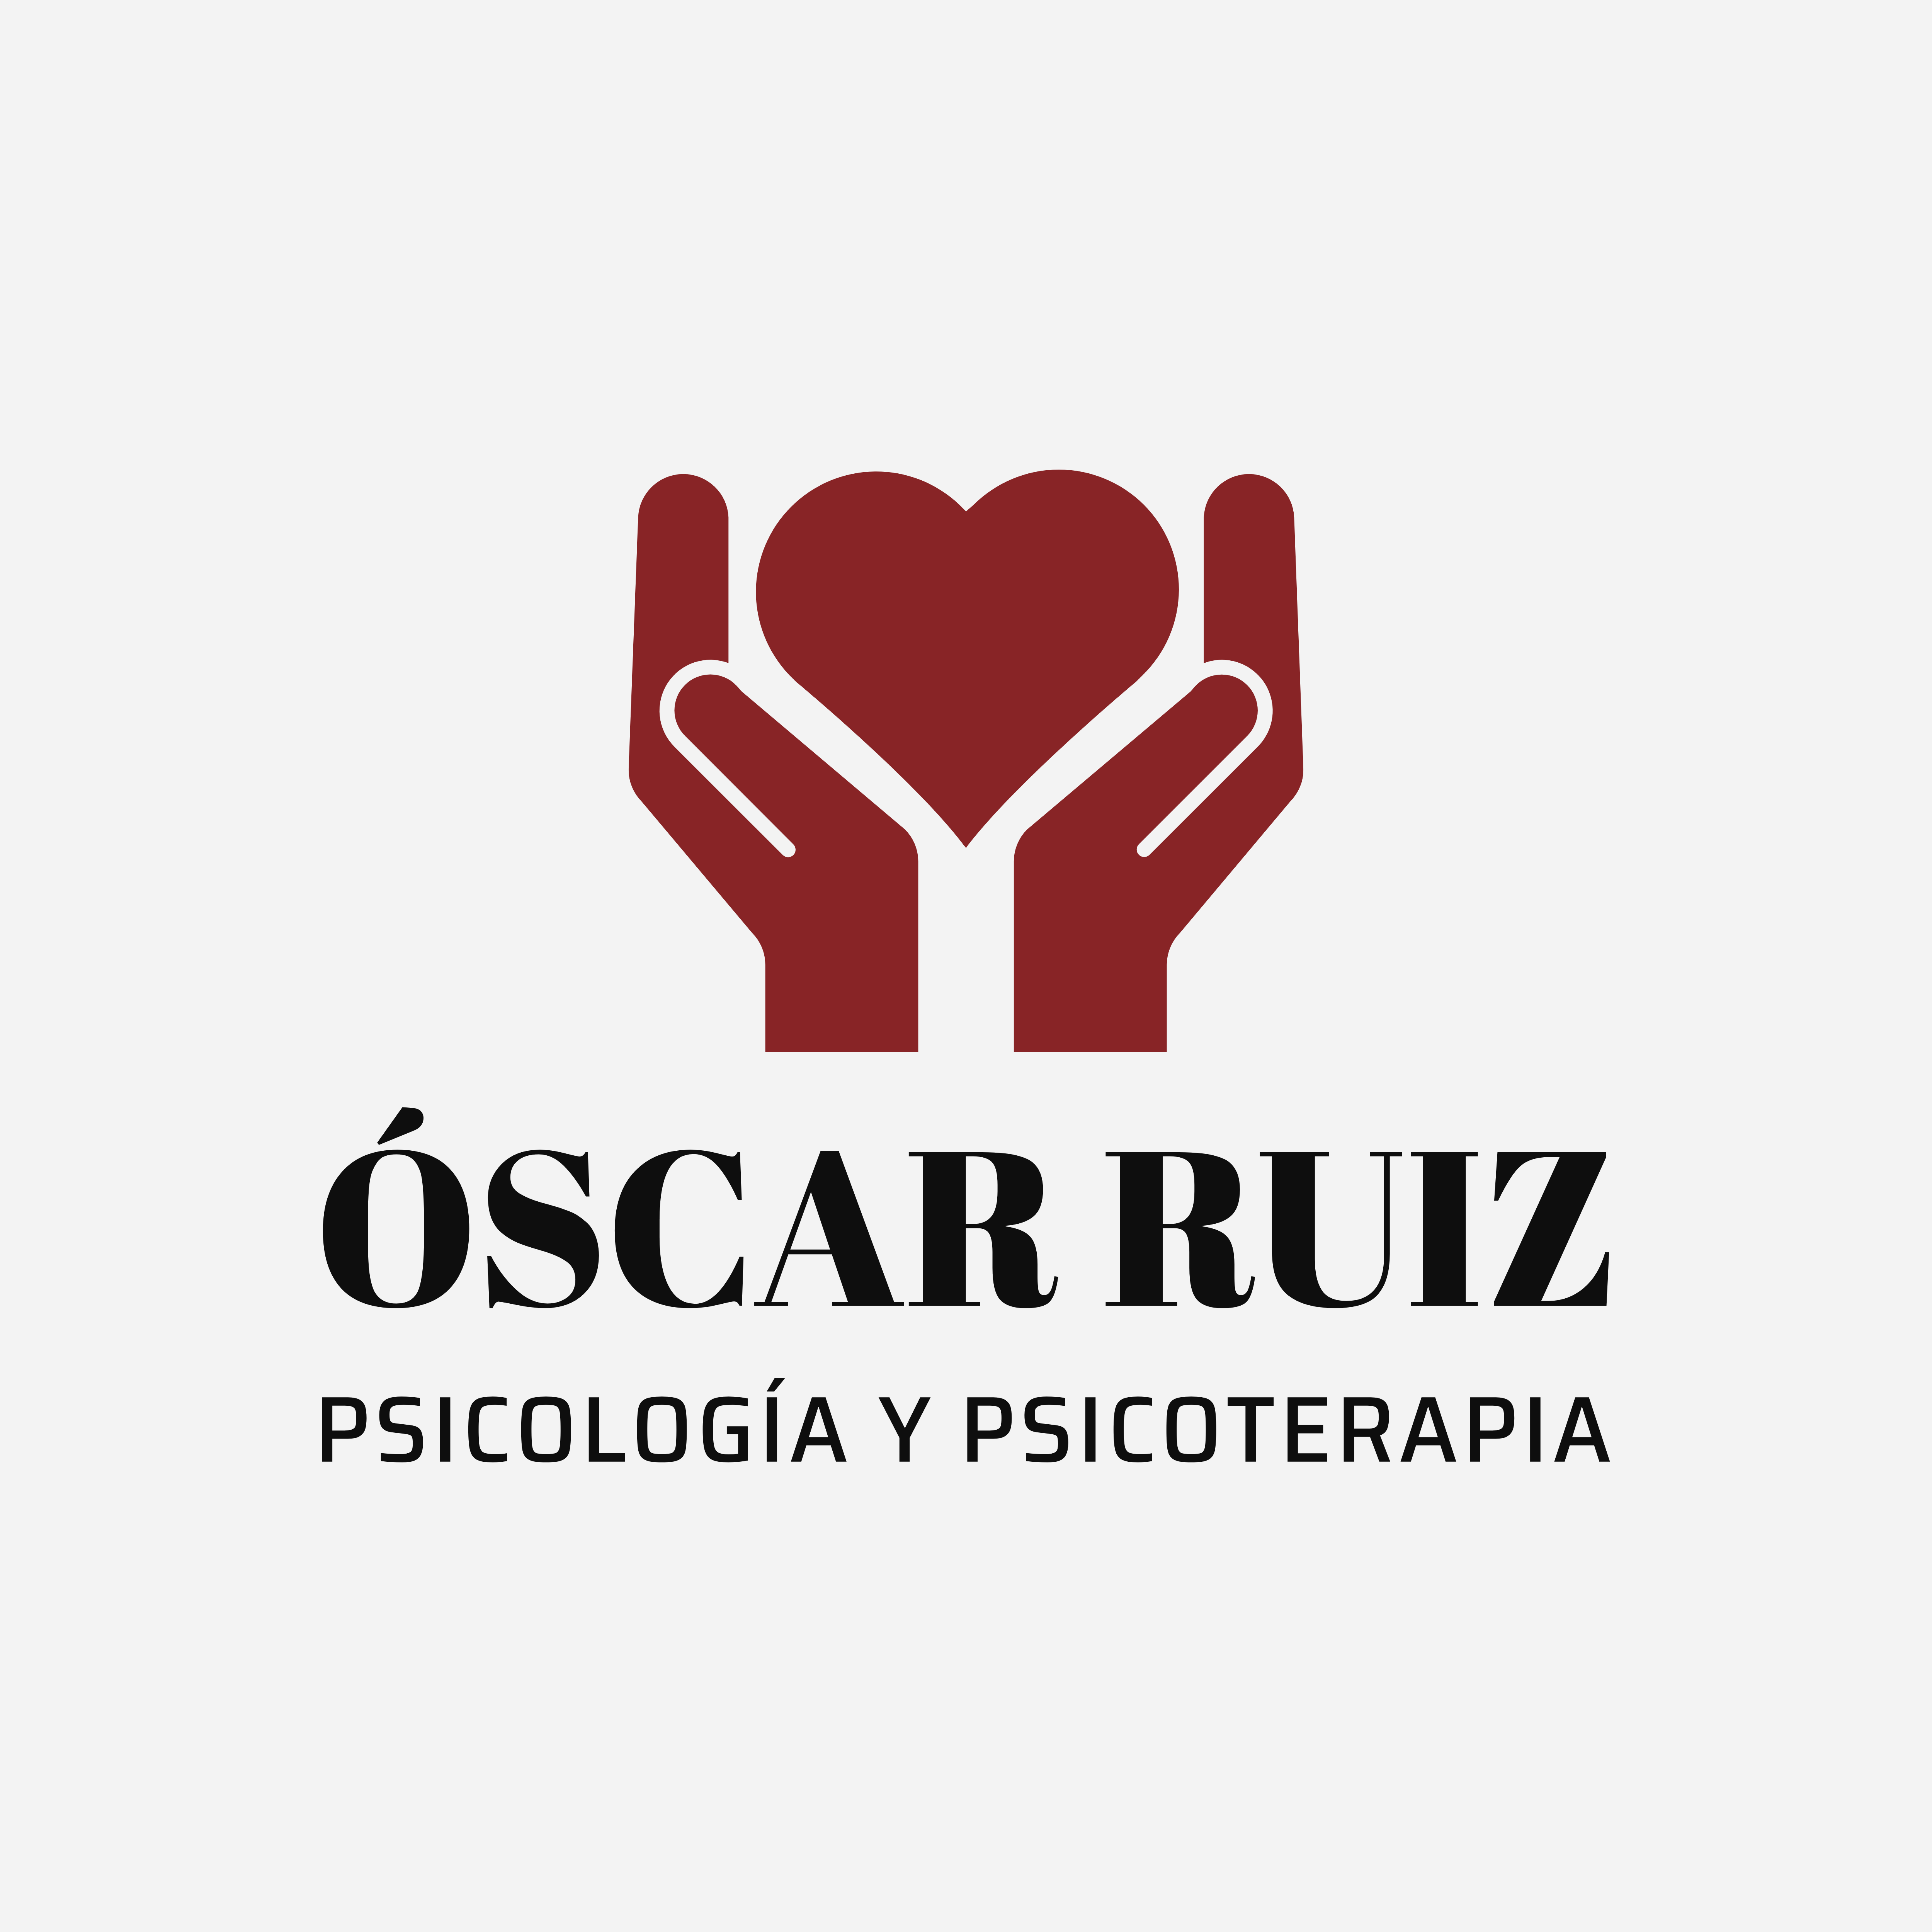 Óscar Ruiz Psicología y Psicoterapia Logo